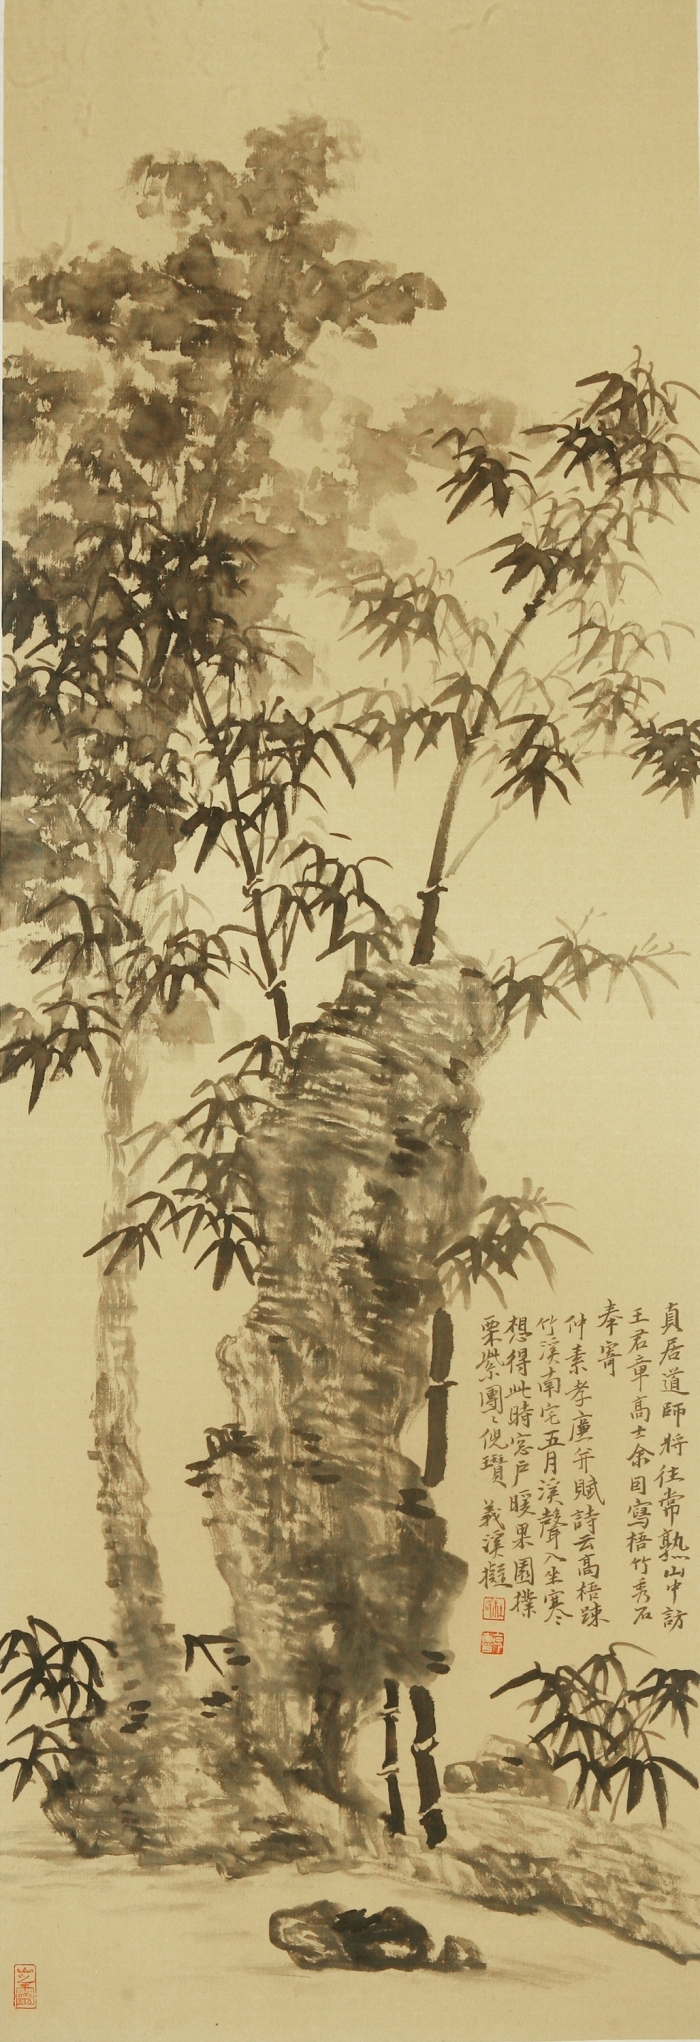 La galerie Fenghetang Art Chinois - L'utilisation actuelle de l'ancienneté 1